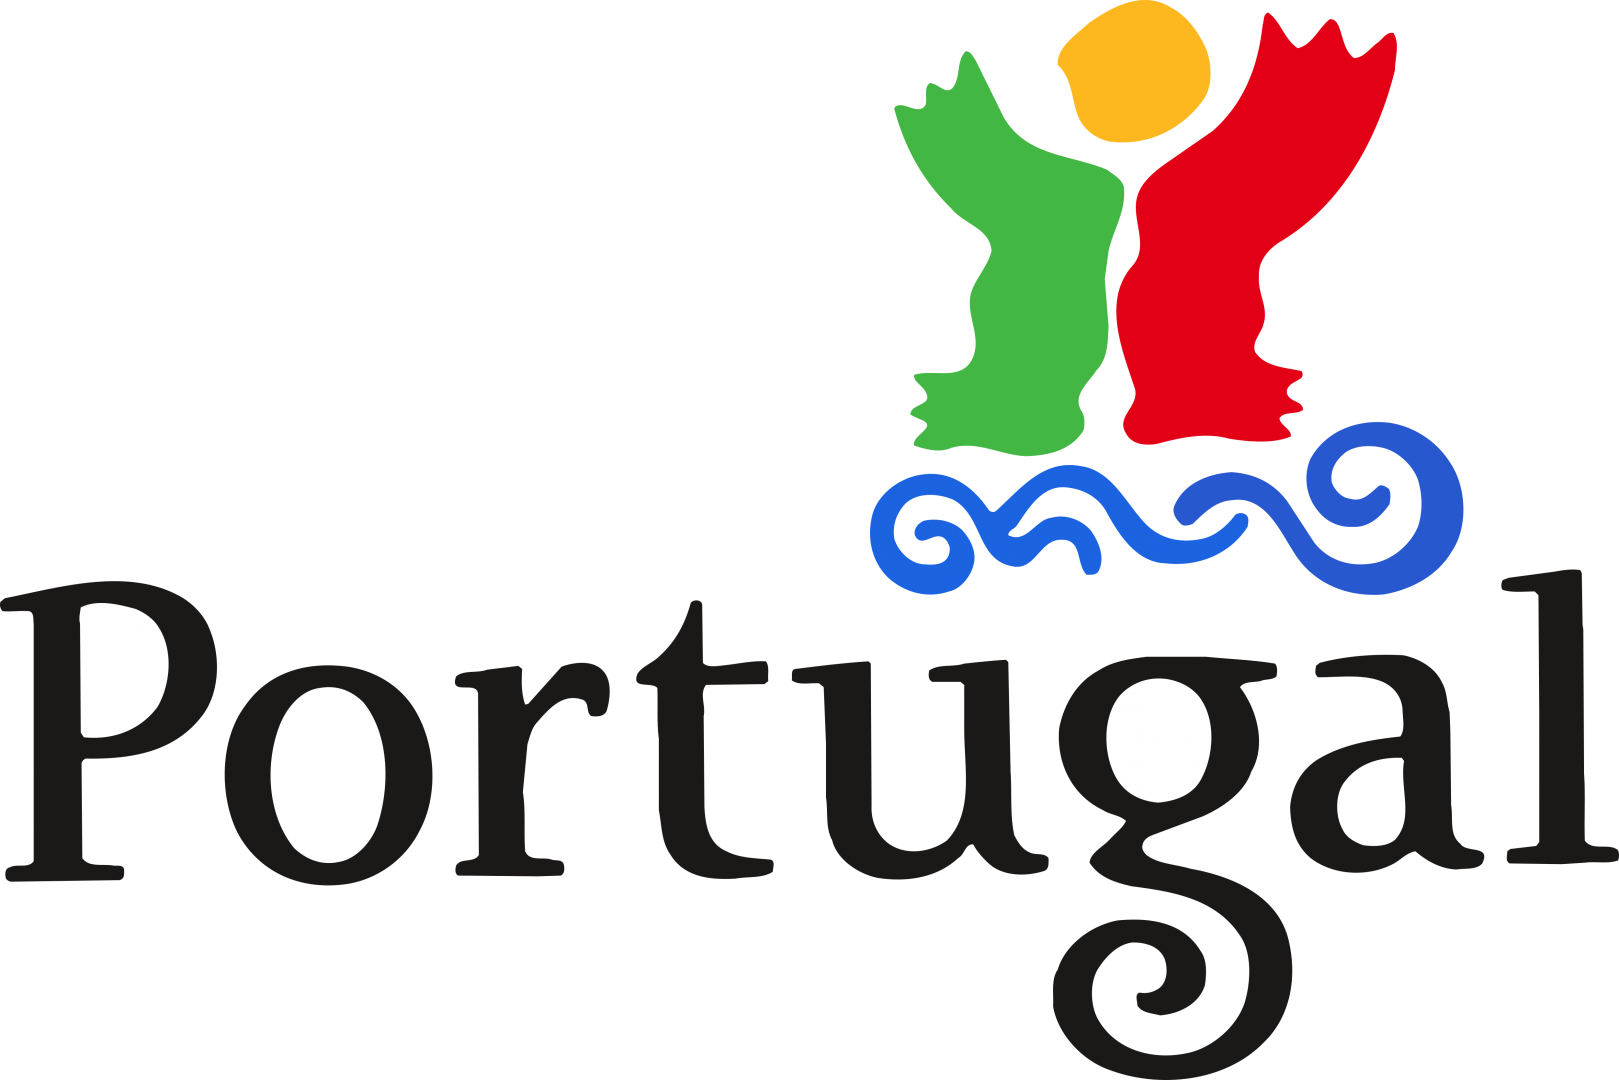 CIRCUITO PORTUGAL 